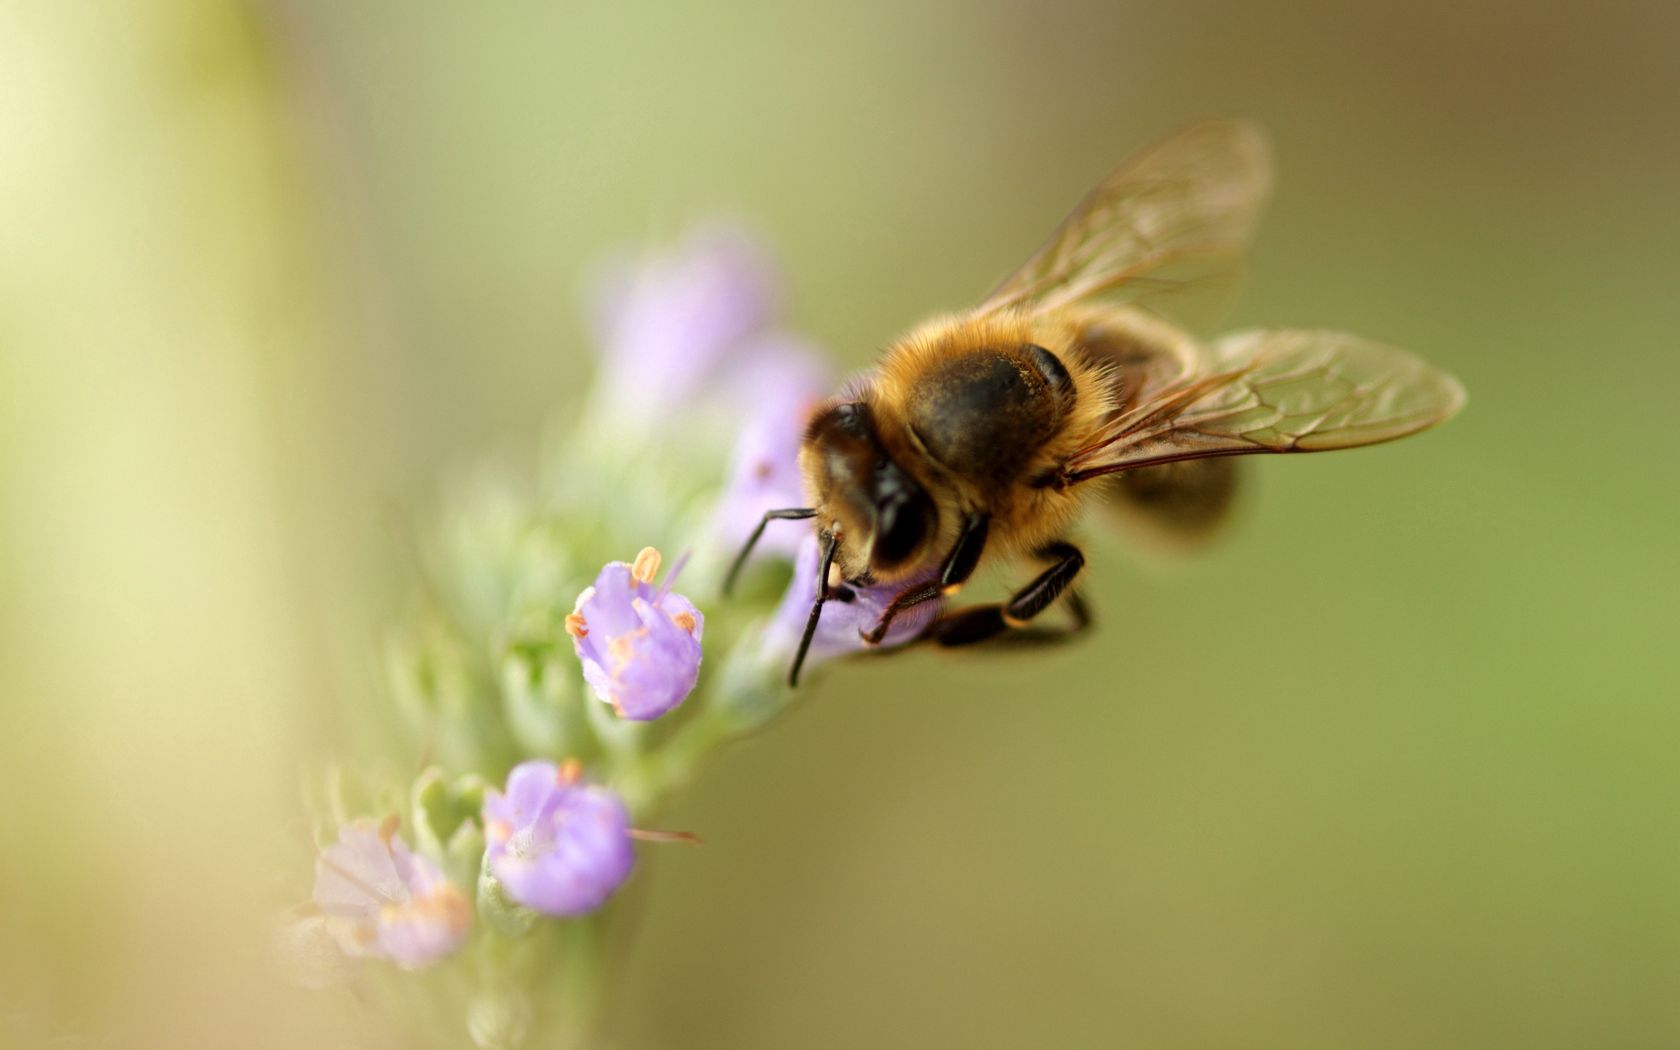 Скачать обои бесплатно Опыление, Пчела, Макро, Цветок картинка на рабочий стол ПК